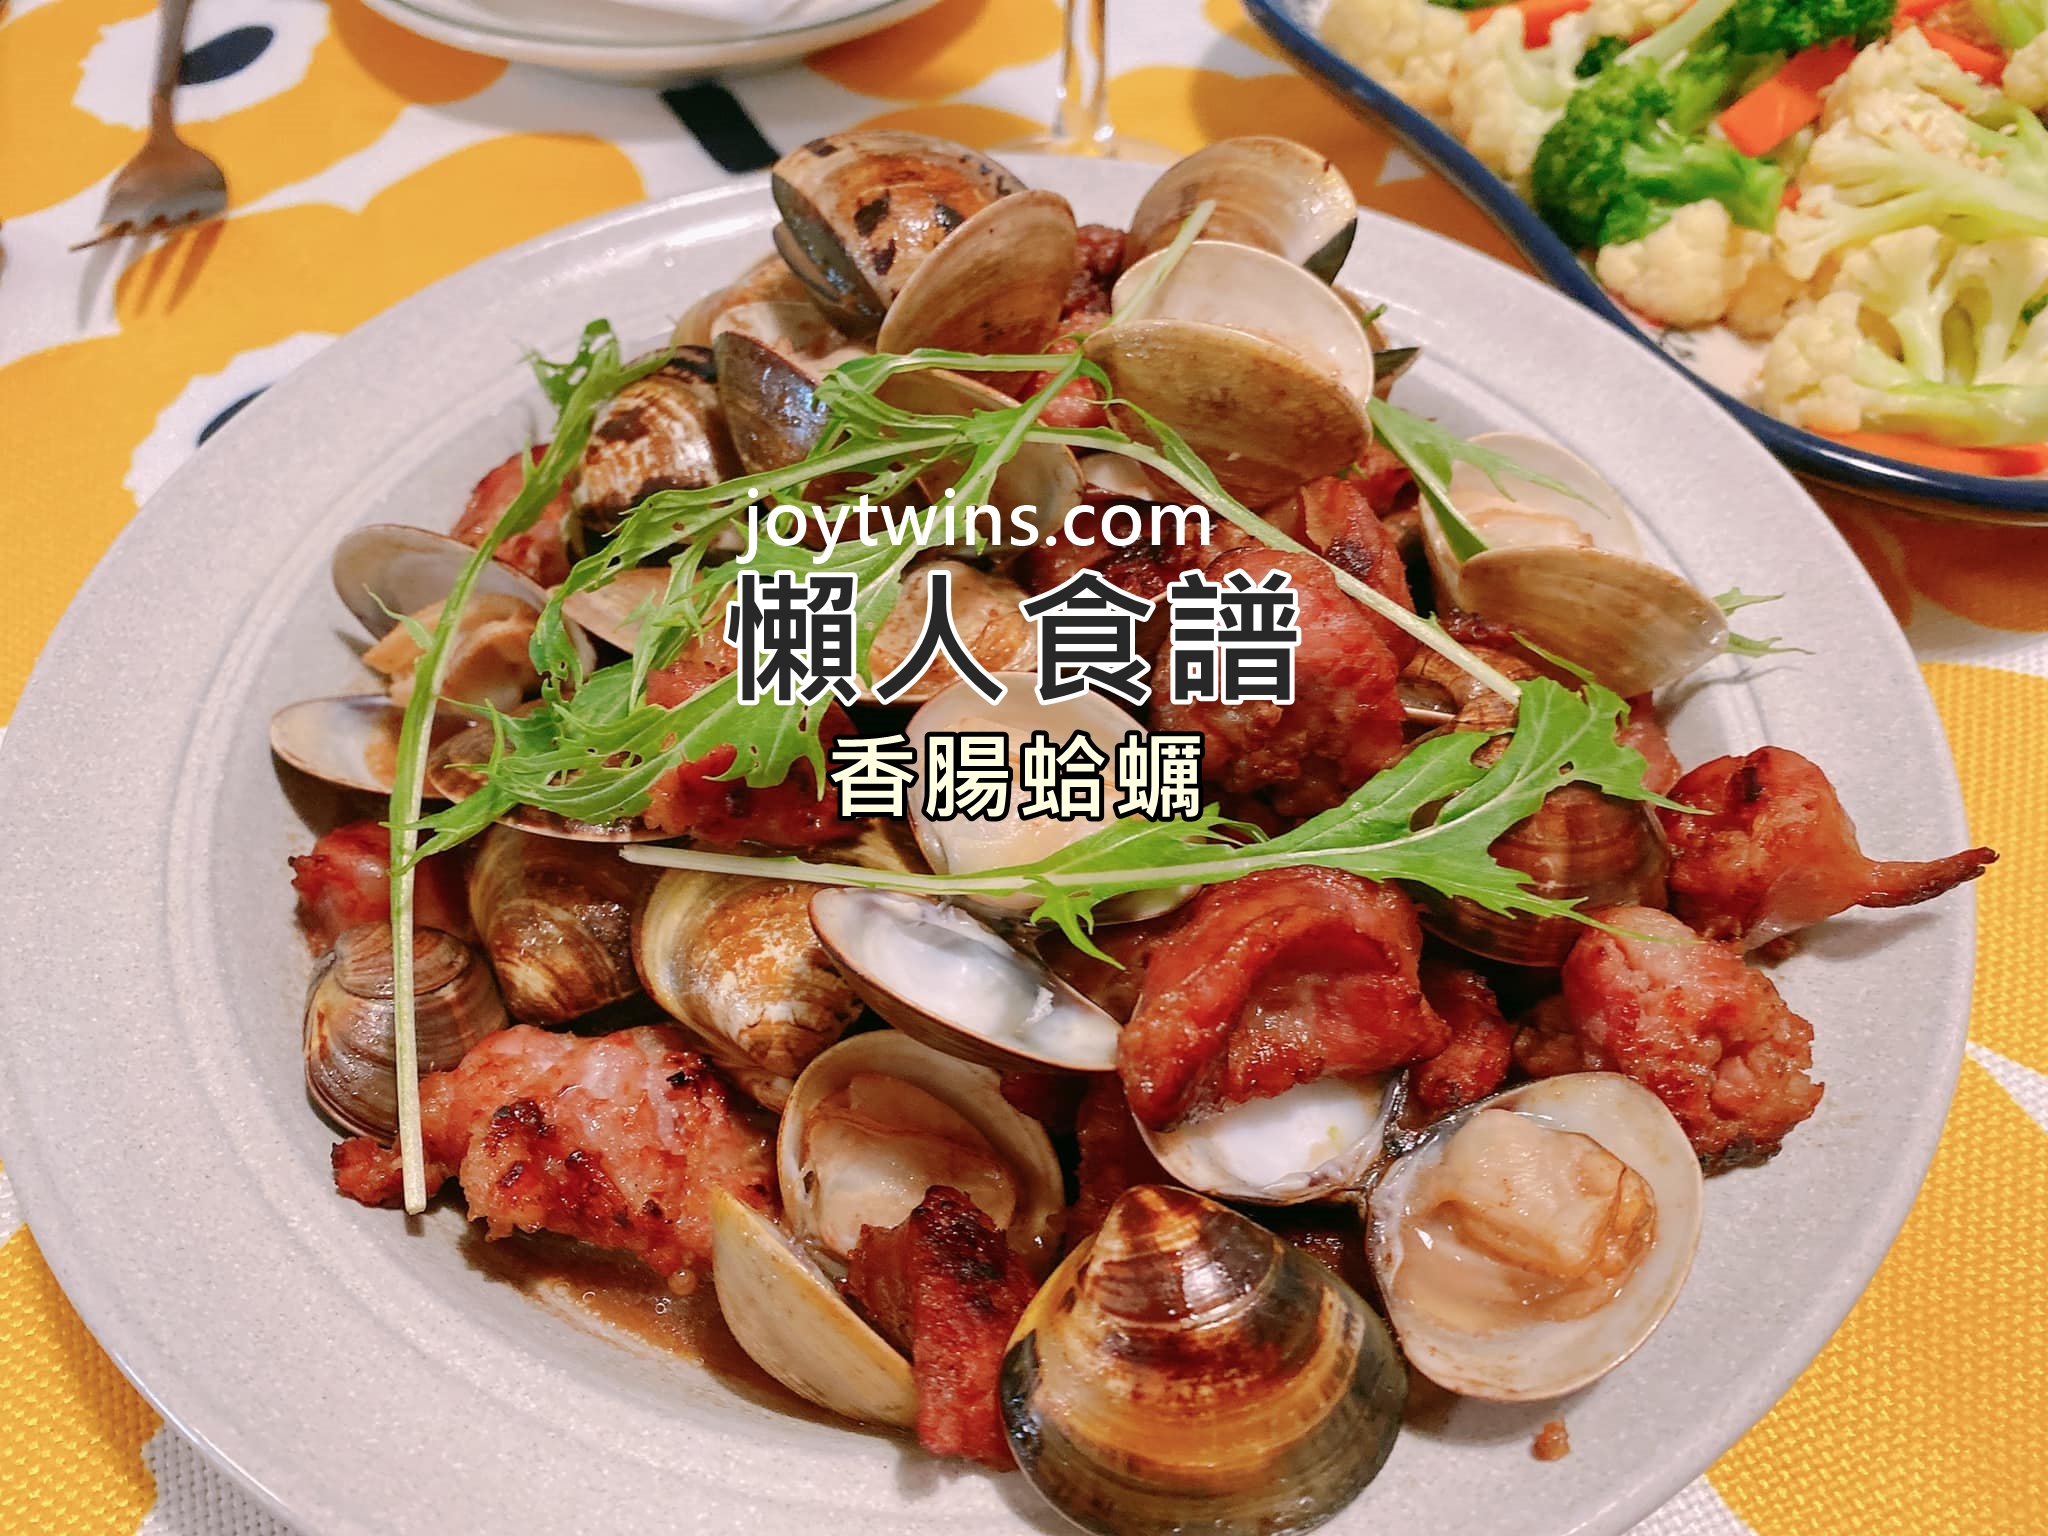 【懶人食譜】香腸蛤蠣 澎派視覺饗宴! 最佳宴客菜! 不需調味即可上桌